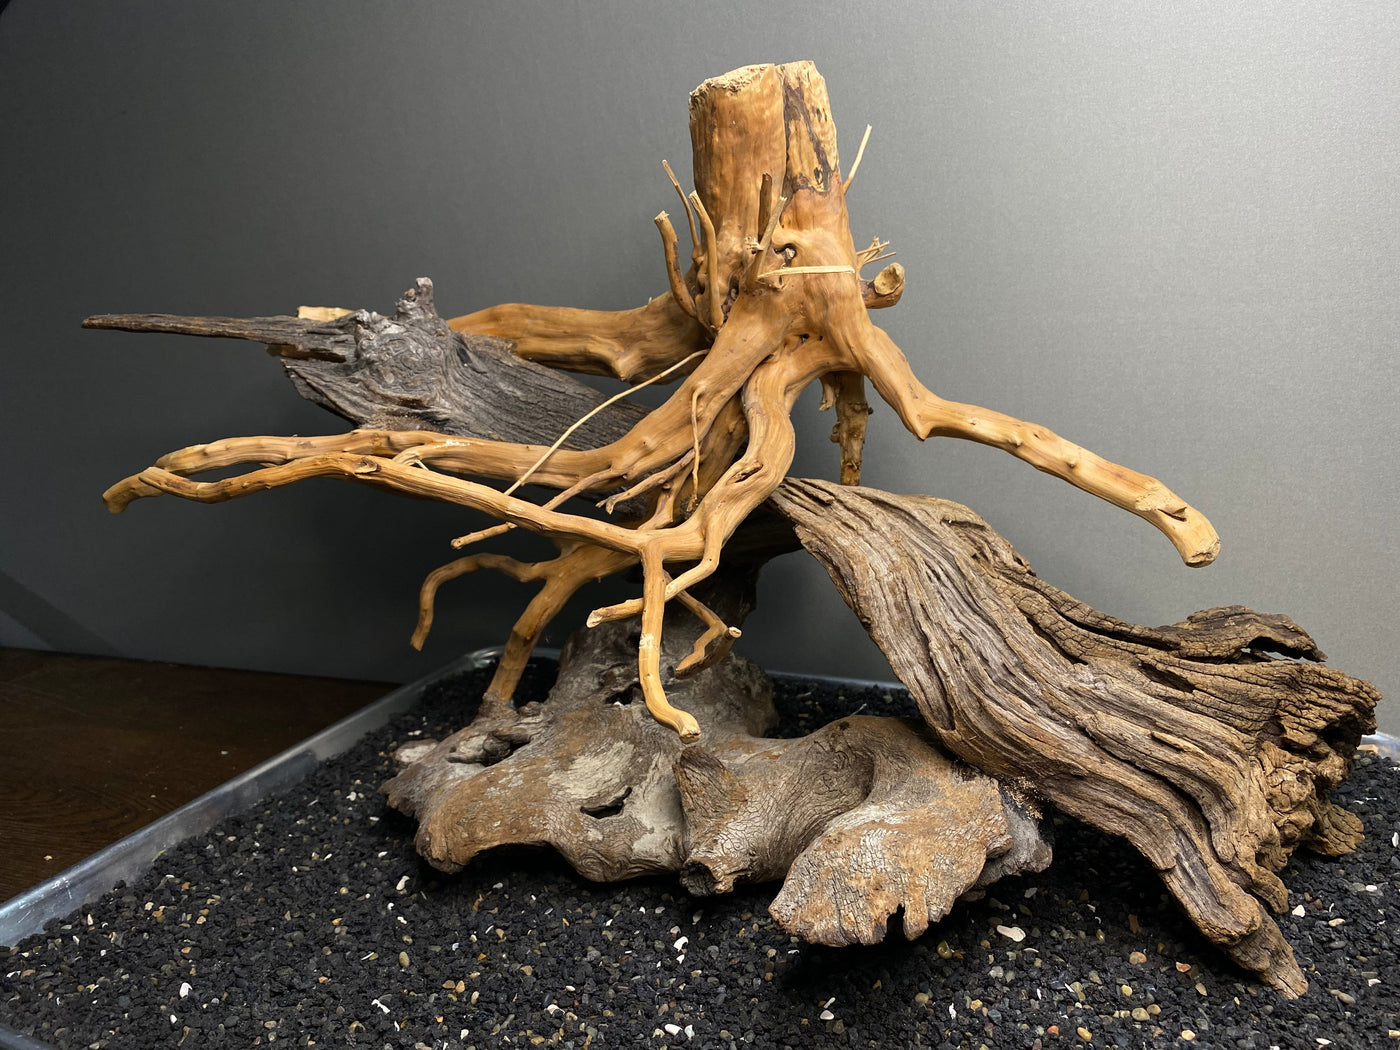 Driftwood Showpiece Sculpture "Fallen Bridge"